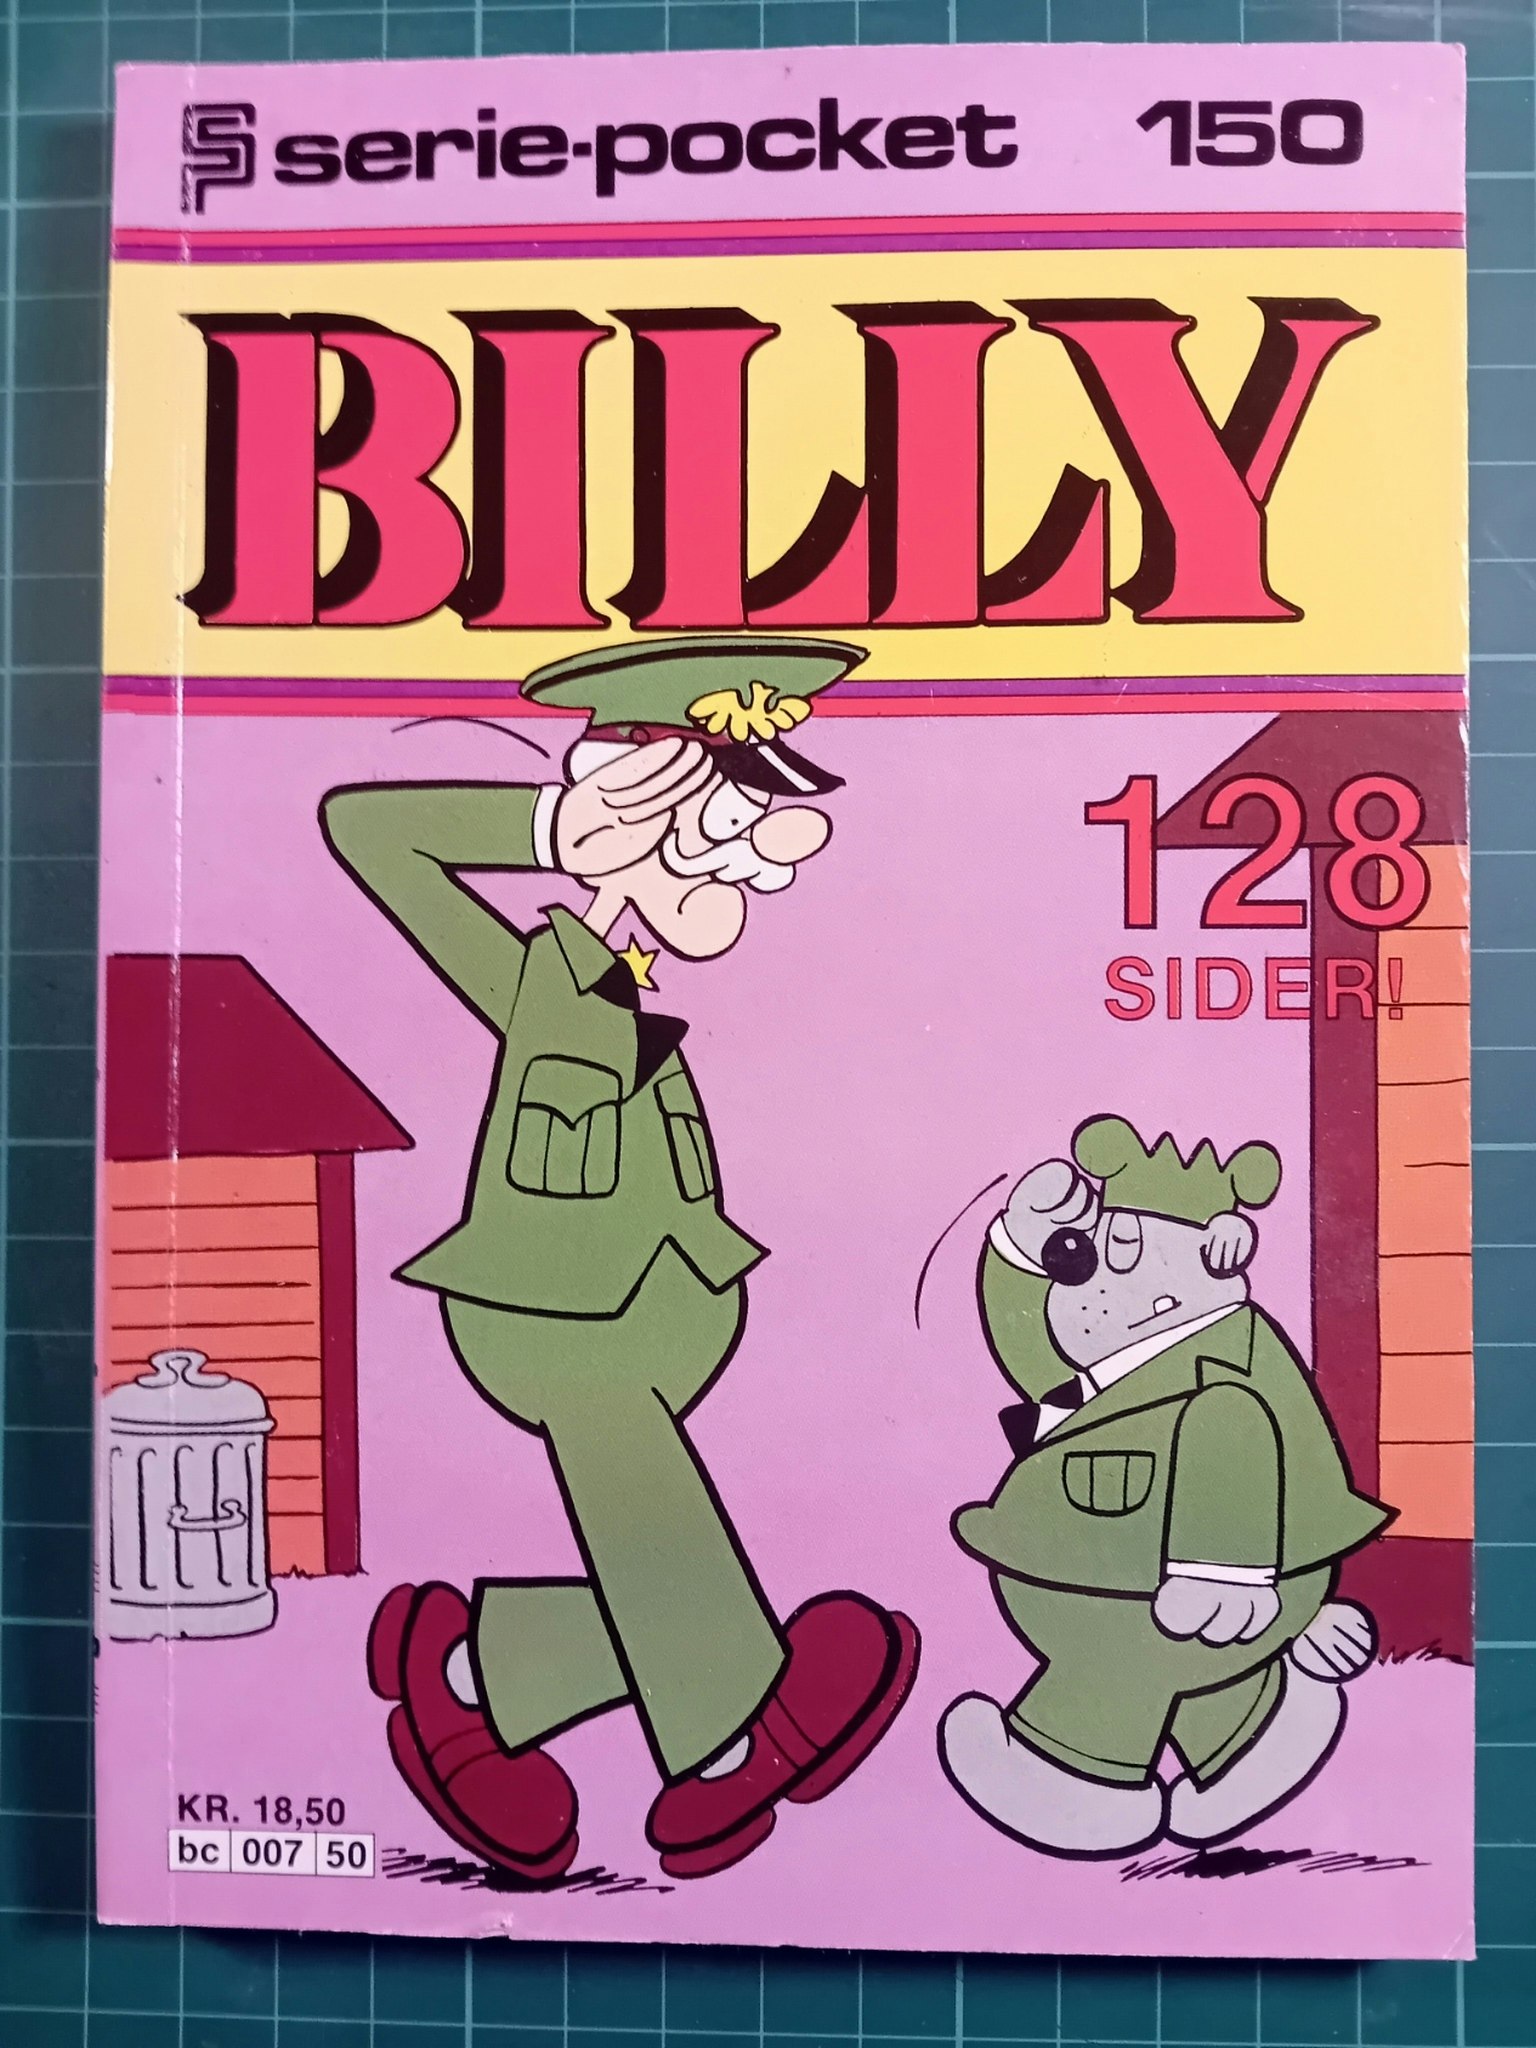 Serie-pocket 150 : Billy